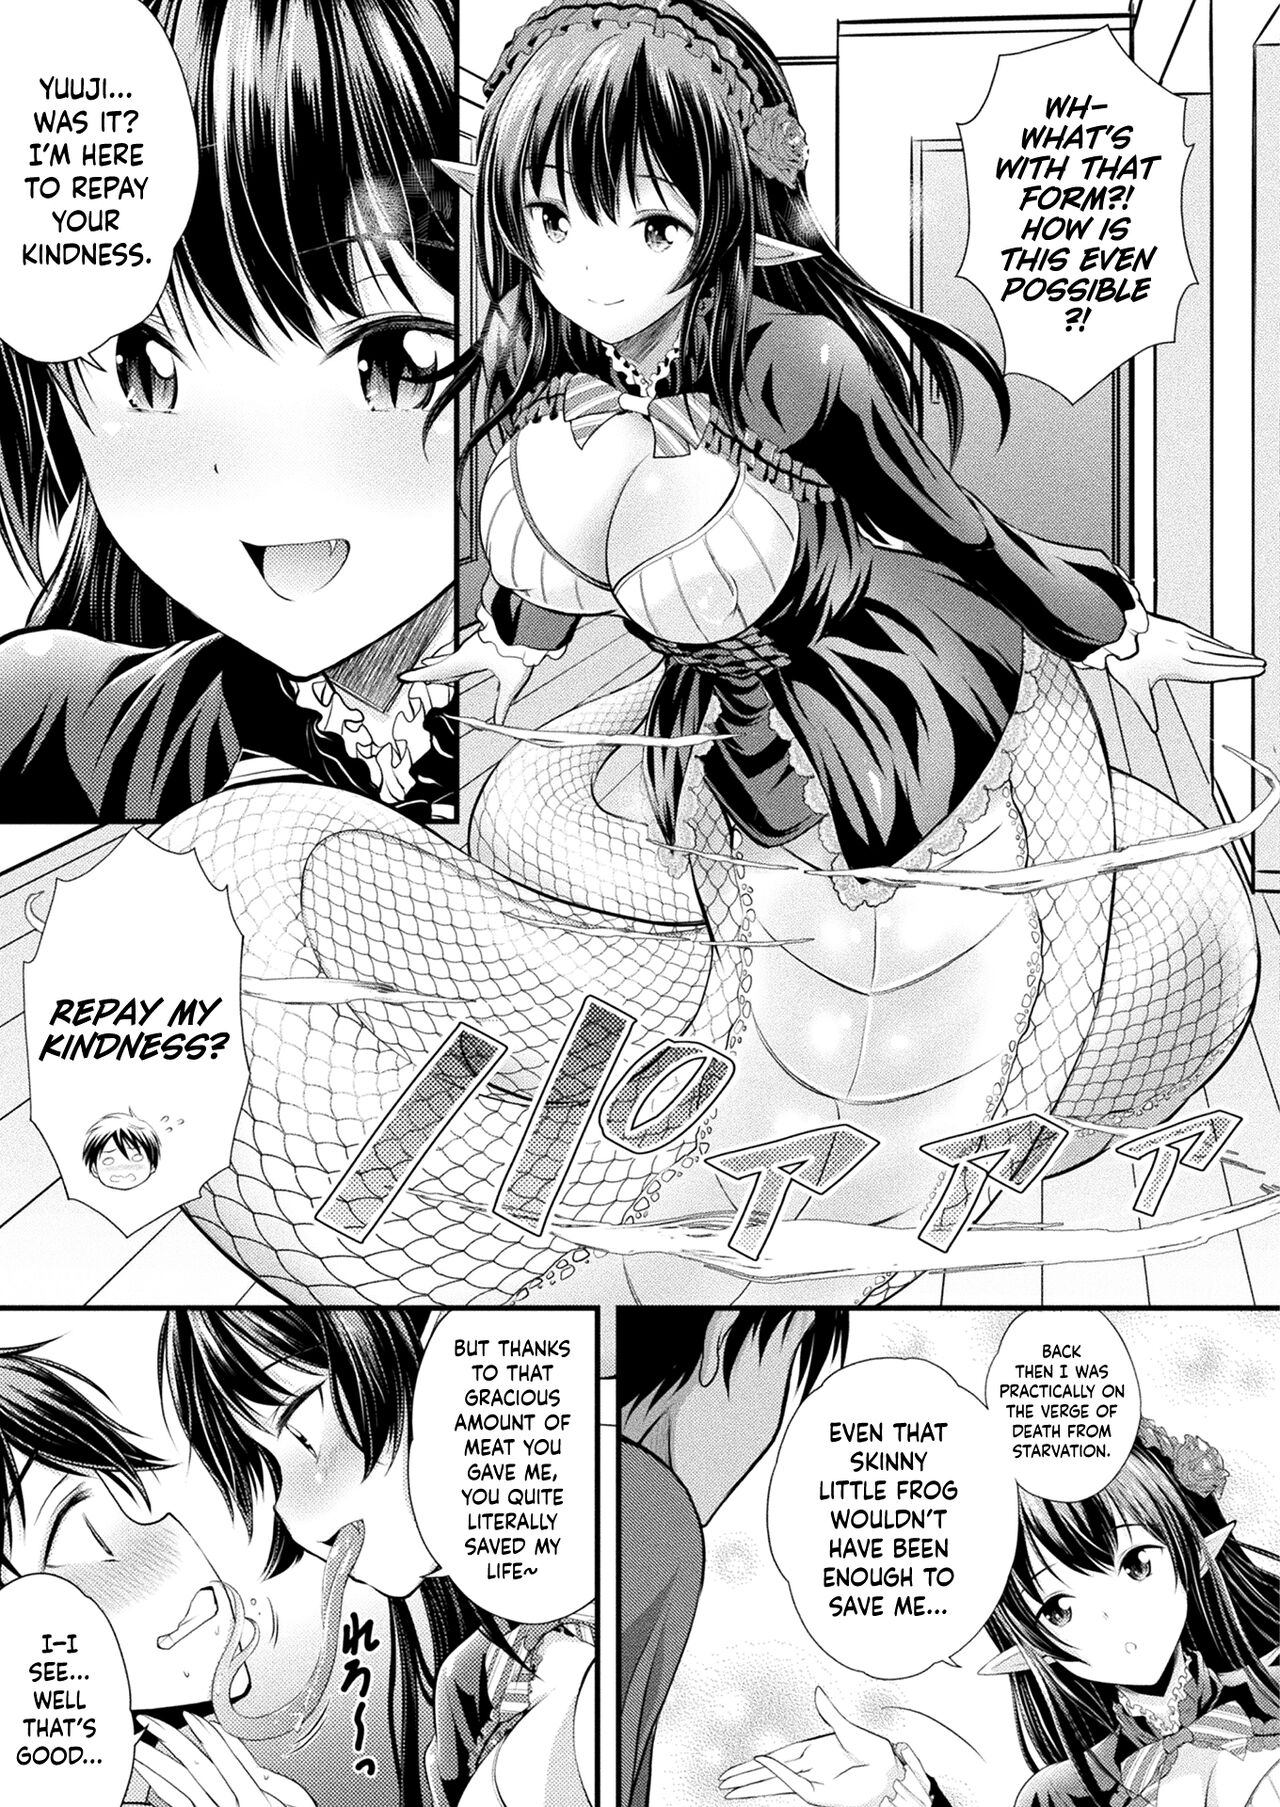 1280px x 1807px - Herptile Girls Kouhen - Page 3 - HentaiFox